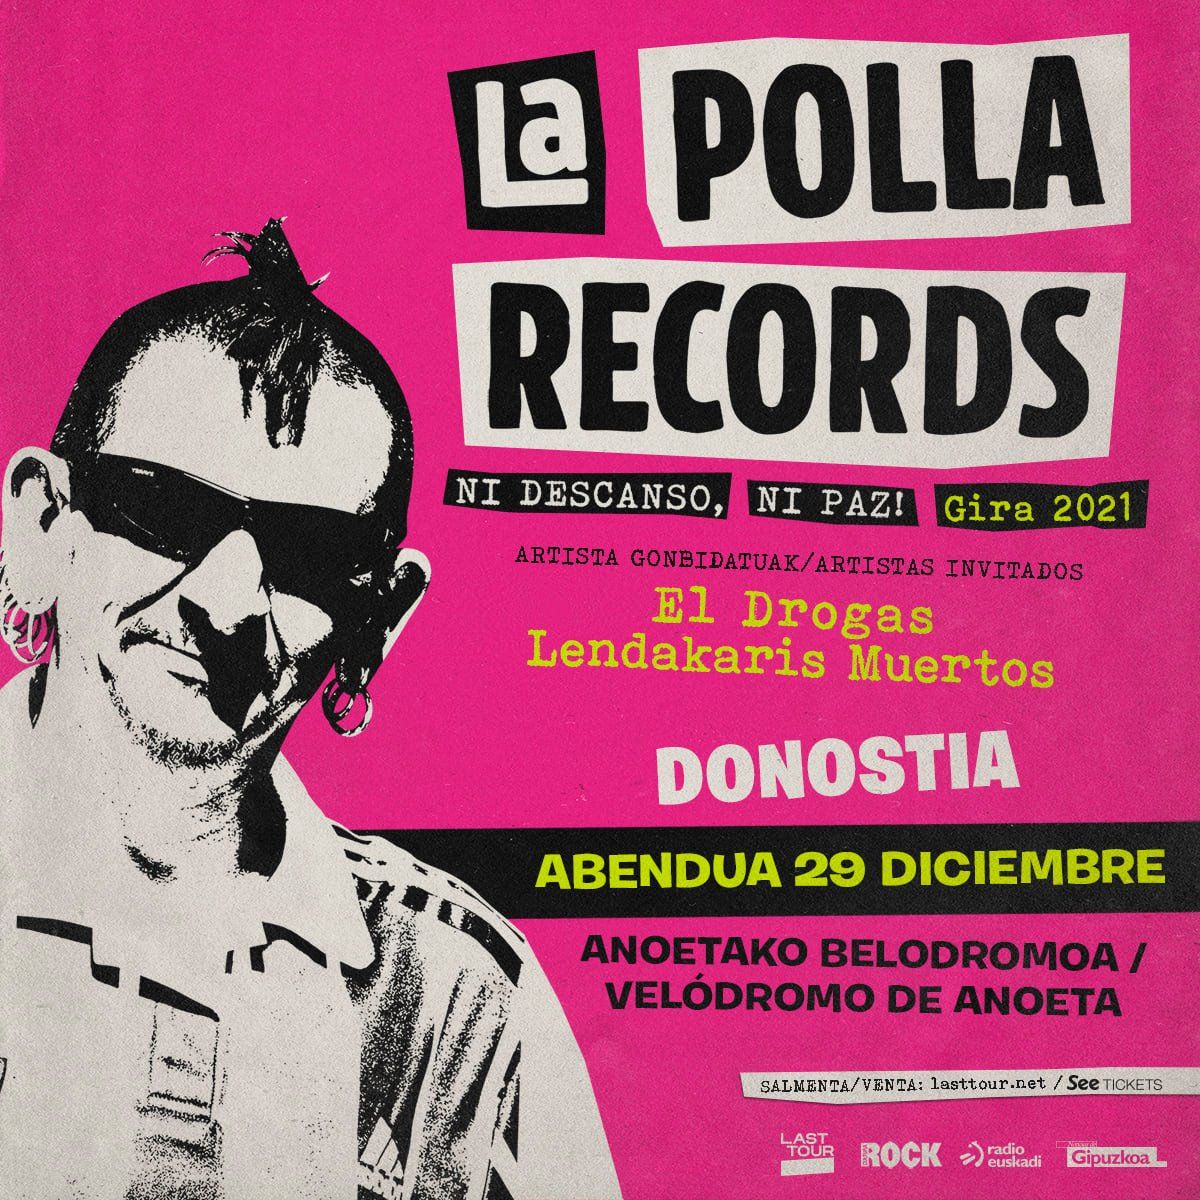 Aplazado el concierto de Donostia de la Polla Records